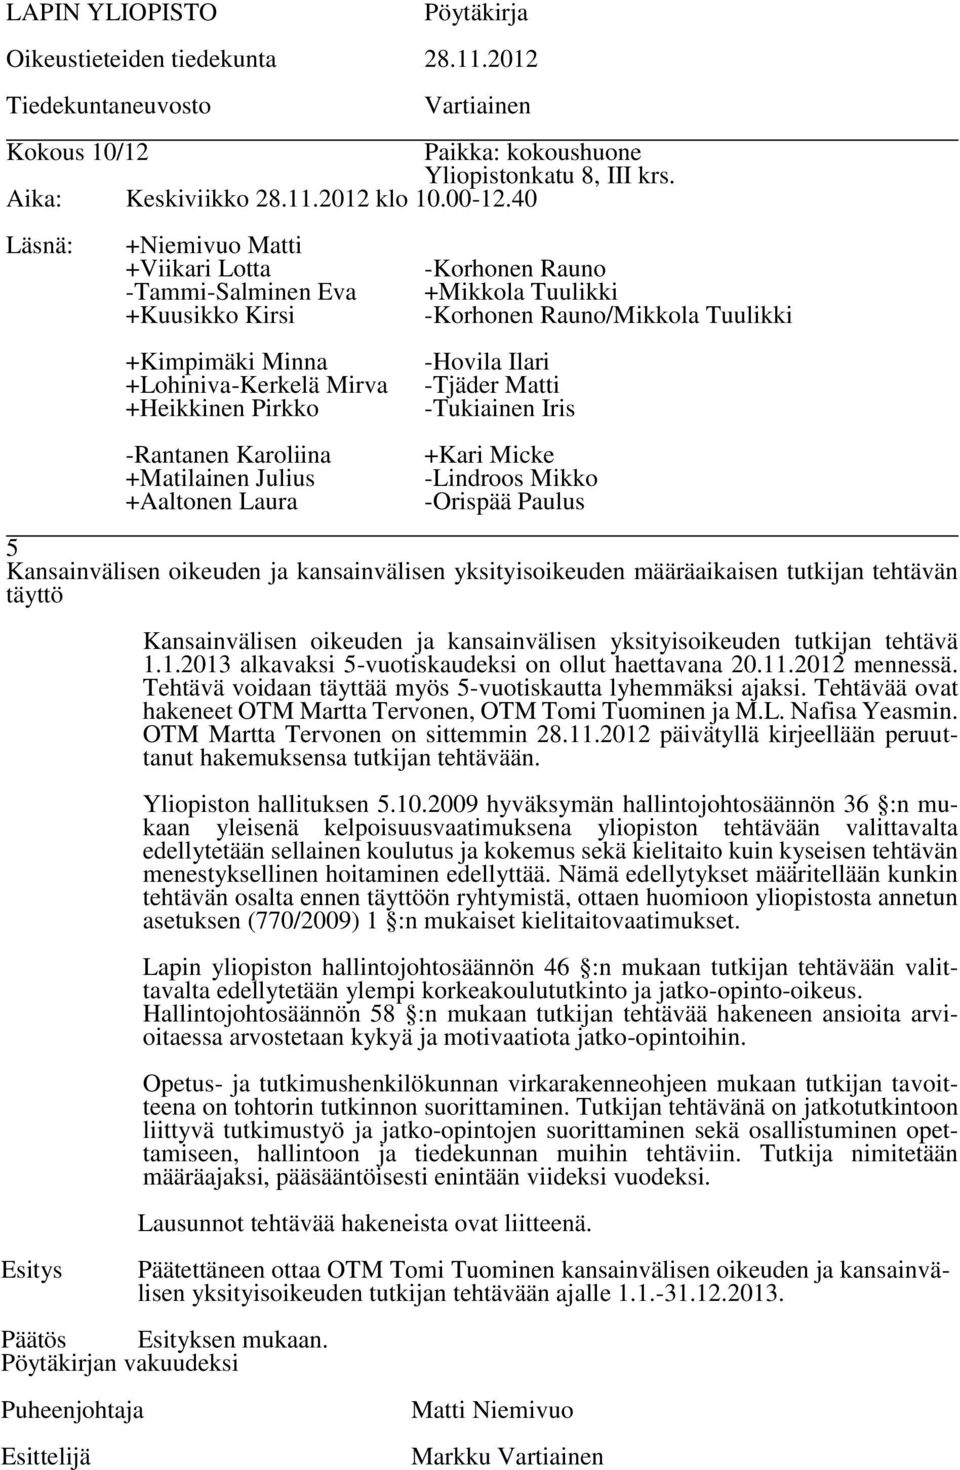 Tehtävää ovat hakeneet OTM Martta Tervonen, OTM Tomi Tuominen ja M.L. Nafisa Yeasmin. OTM Martta Tervonen on sittemmin 28.11.2012 päivätyllä kirjeellään peruuttanut hakemuksensa tutkijan tehtävään.